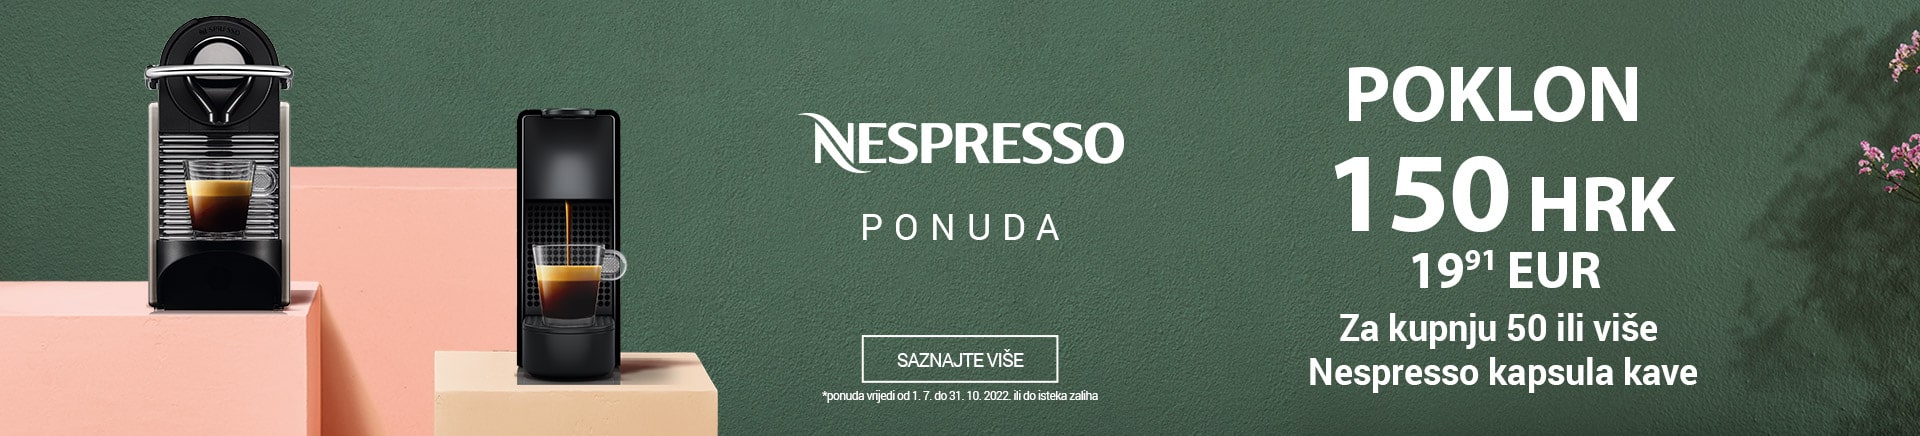 Nespresso ponuda poklon 150 HRK